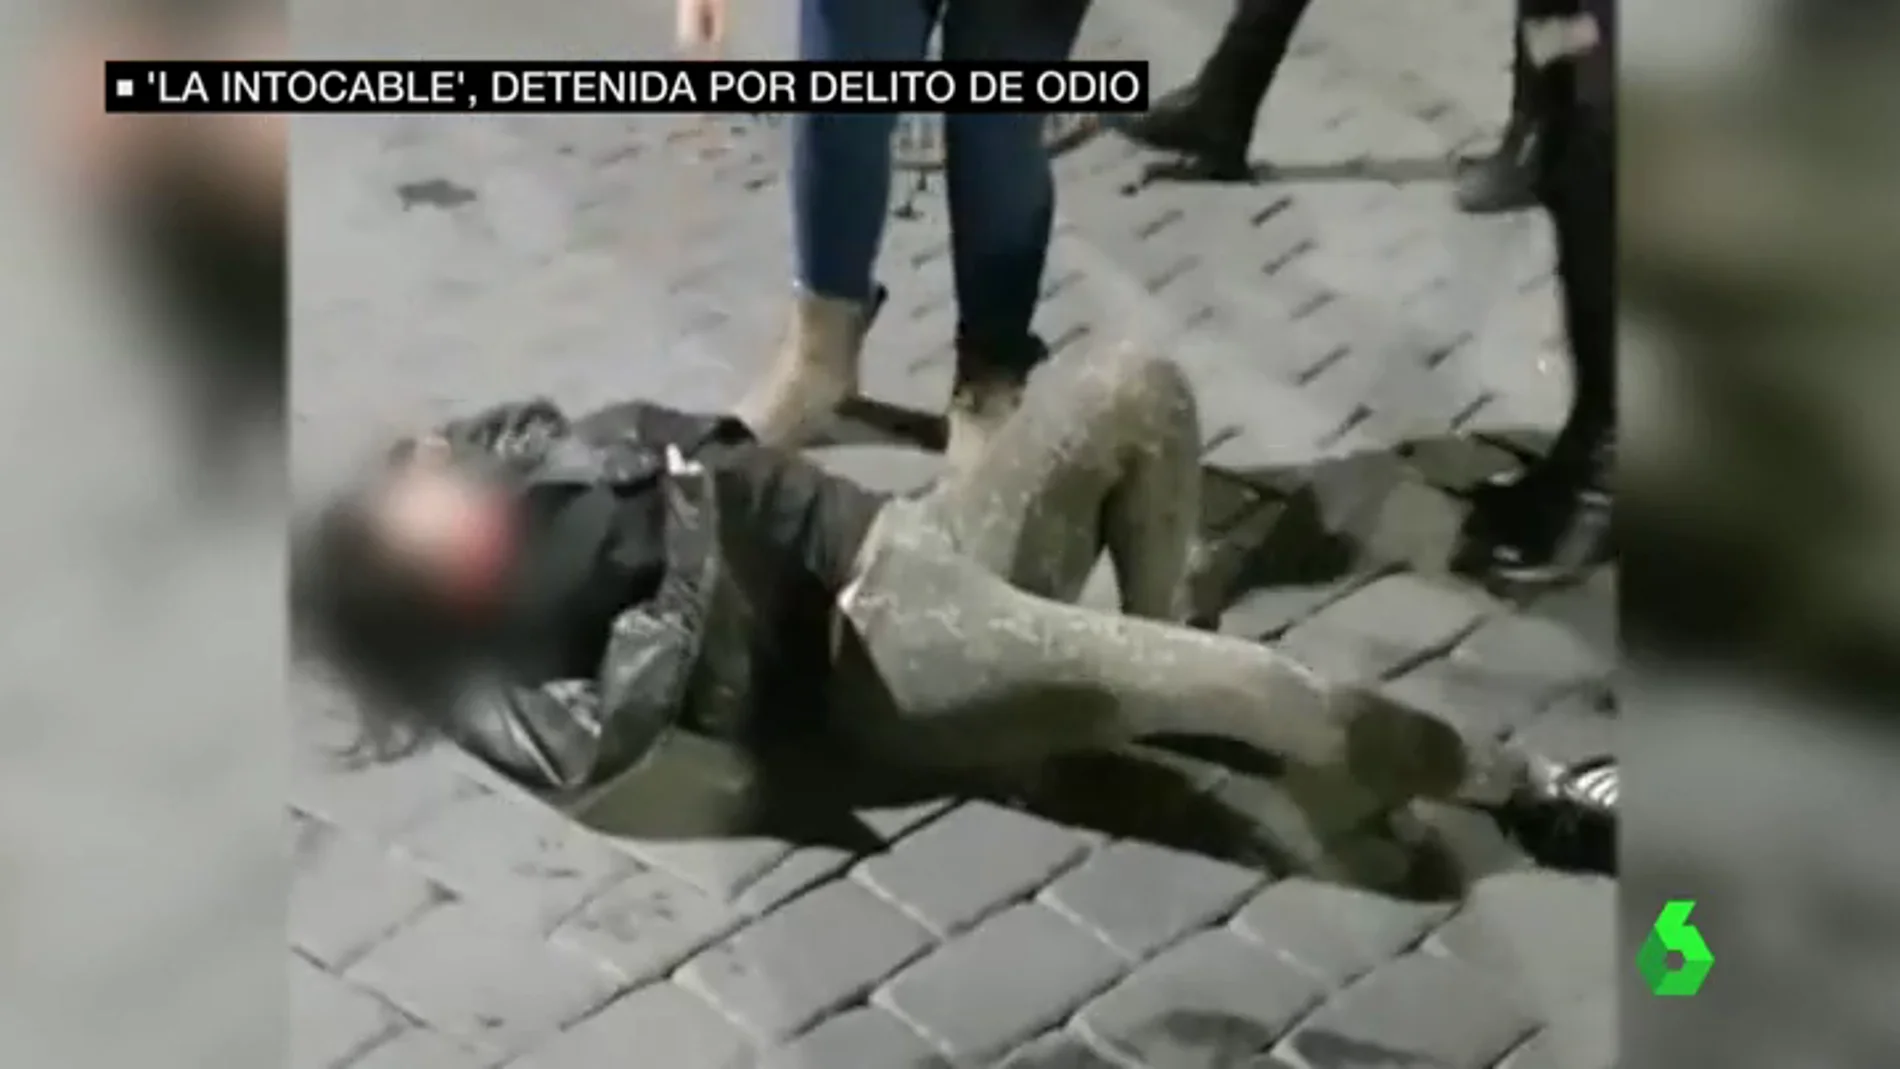 Imagen de 'la intocable' después de sufrir una agresión en un bar de Murcia